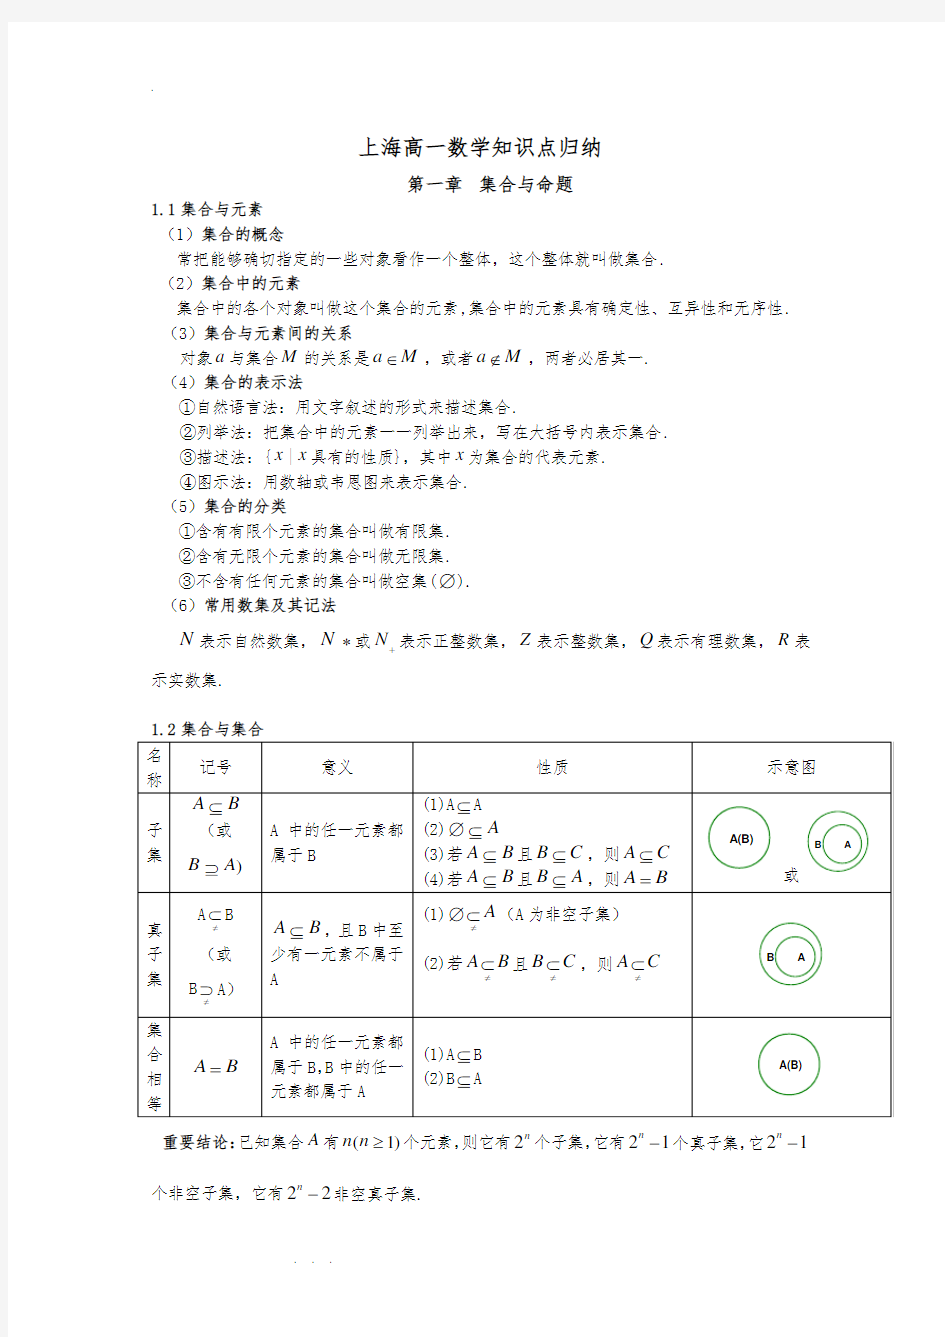 高中一年级数学知识点归纳_上教(补充、整理、排版)